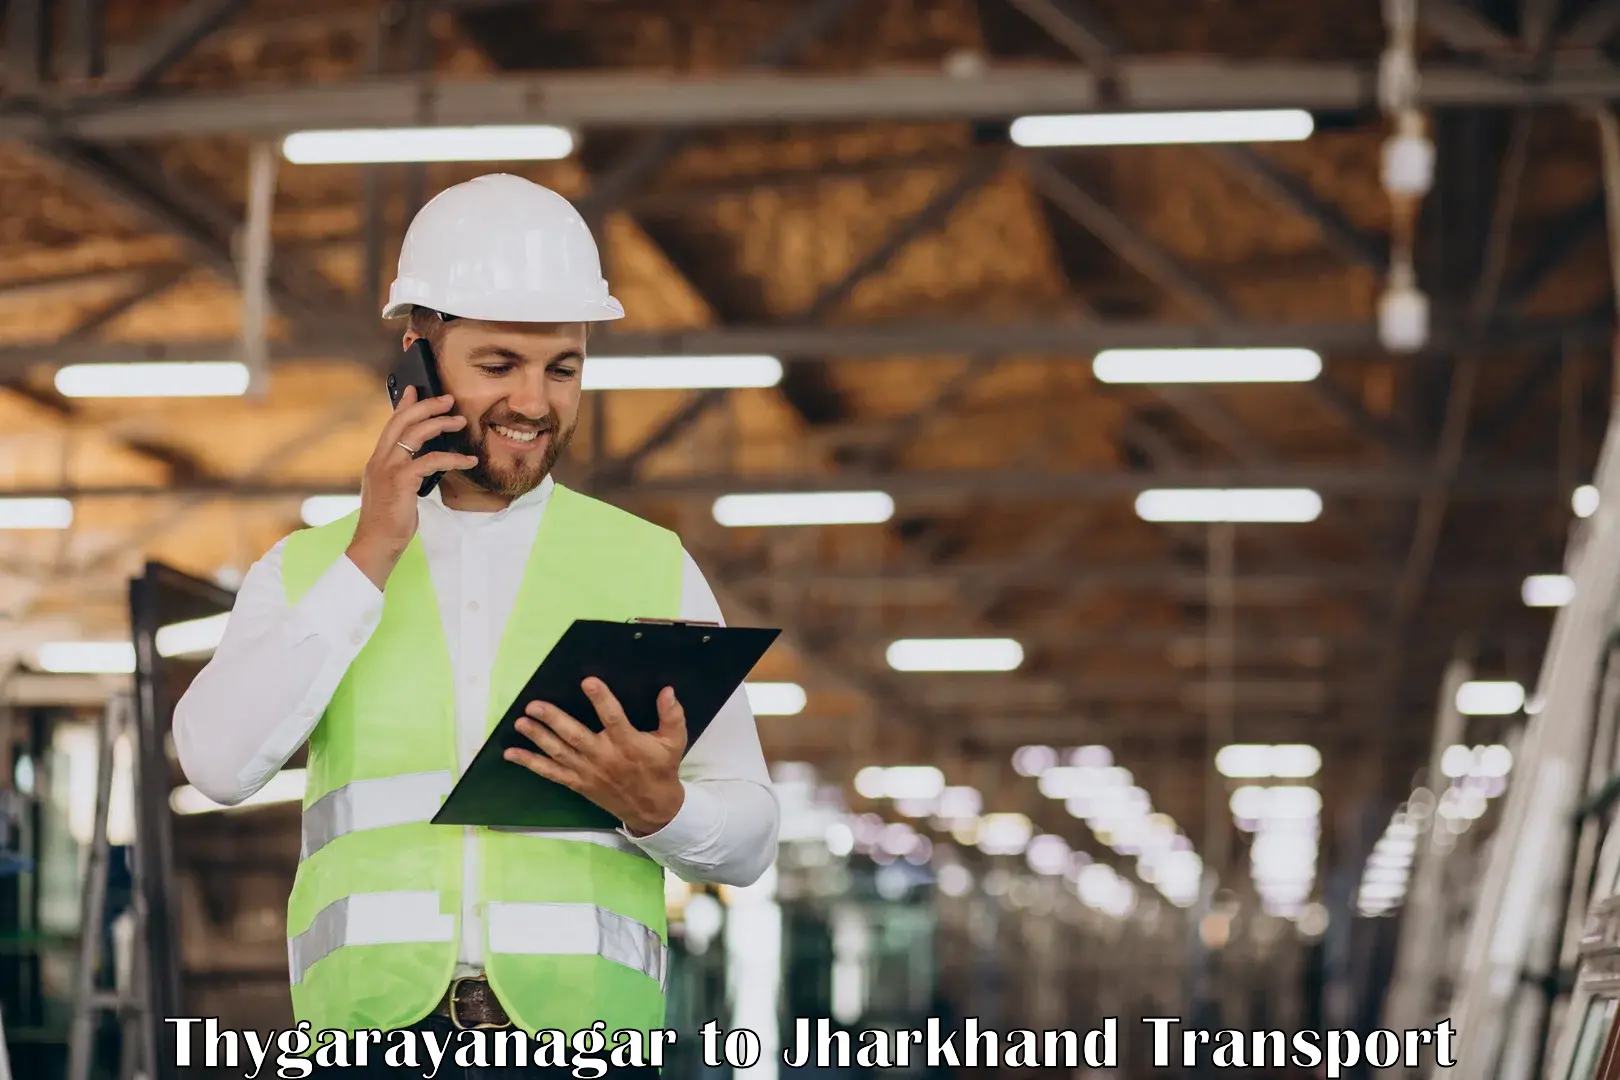 Goods delivery service Thygarayanagar to IIT Dhanbad